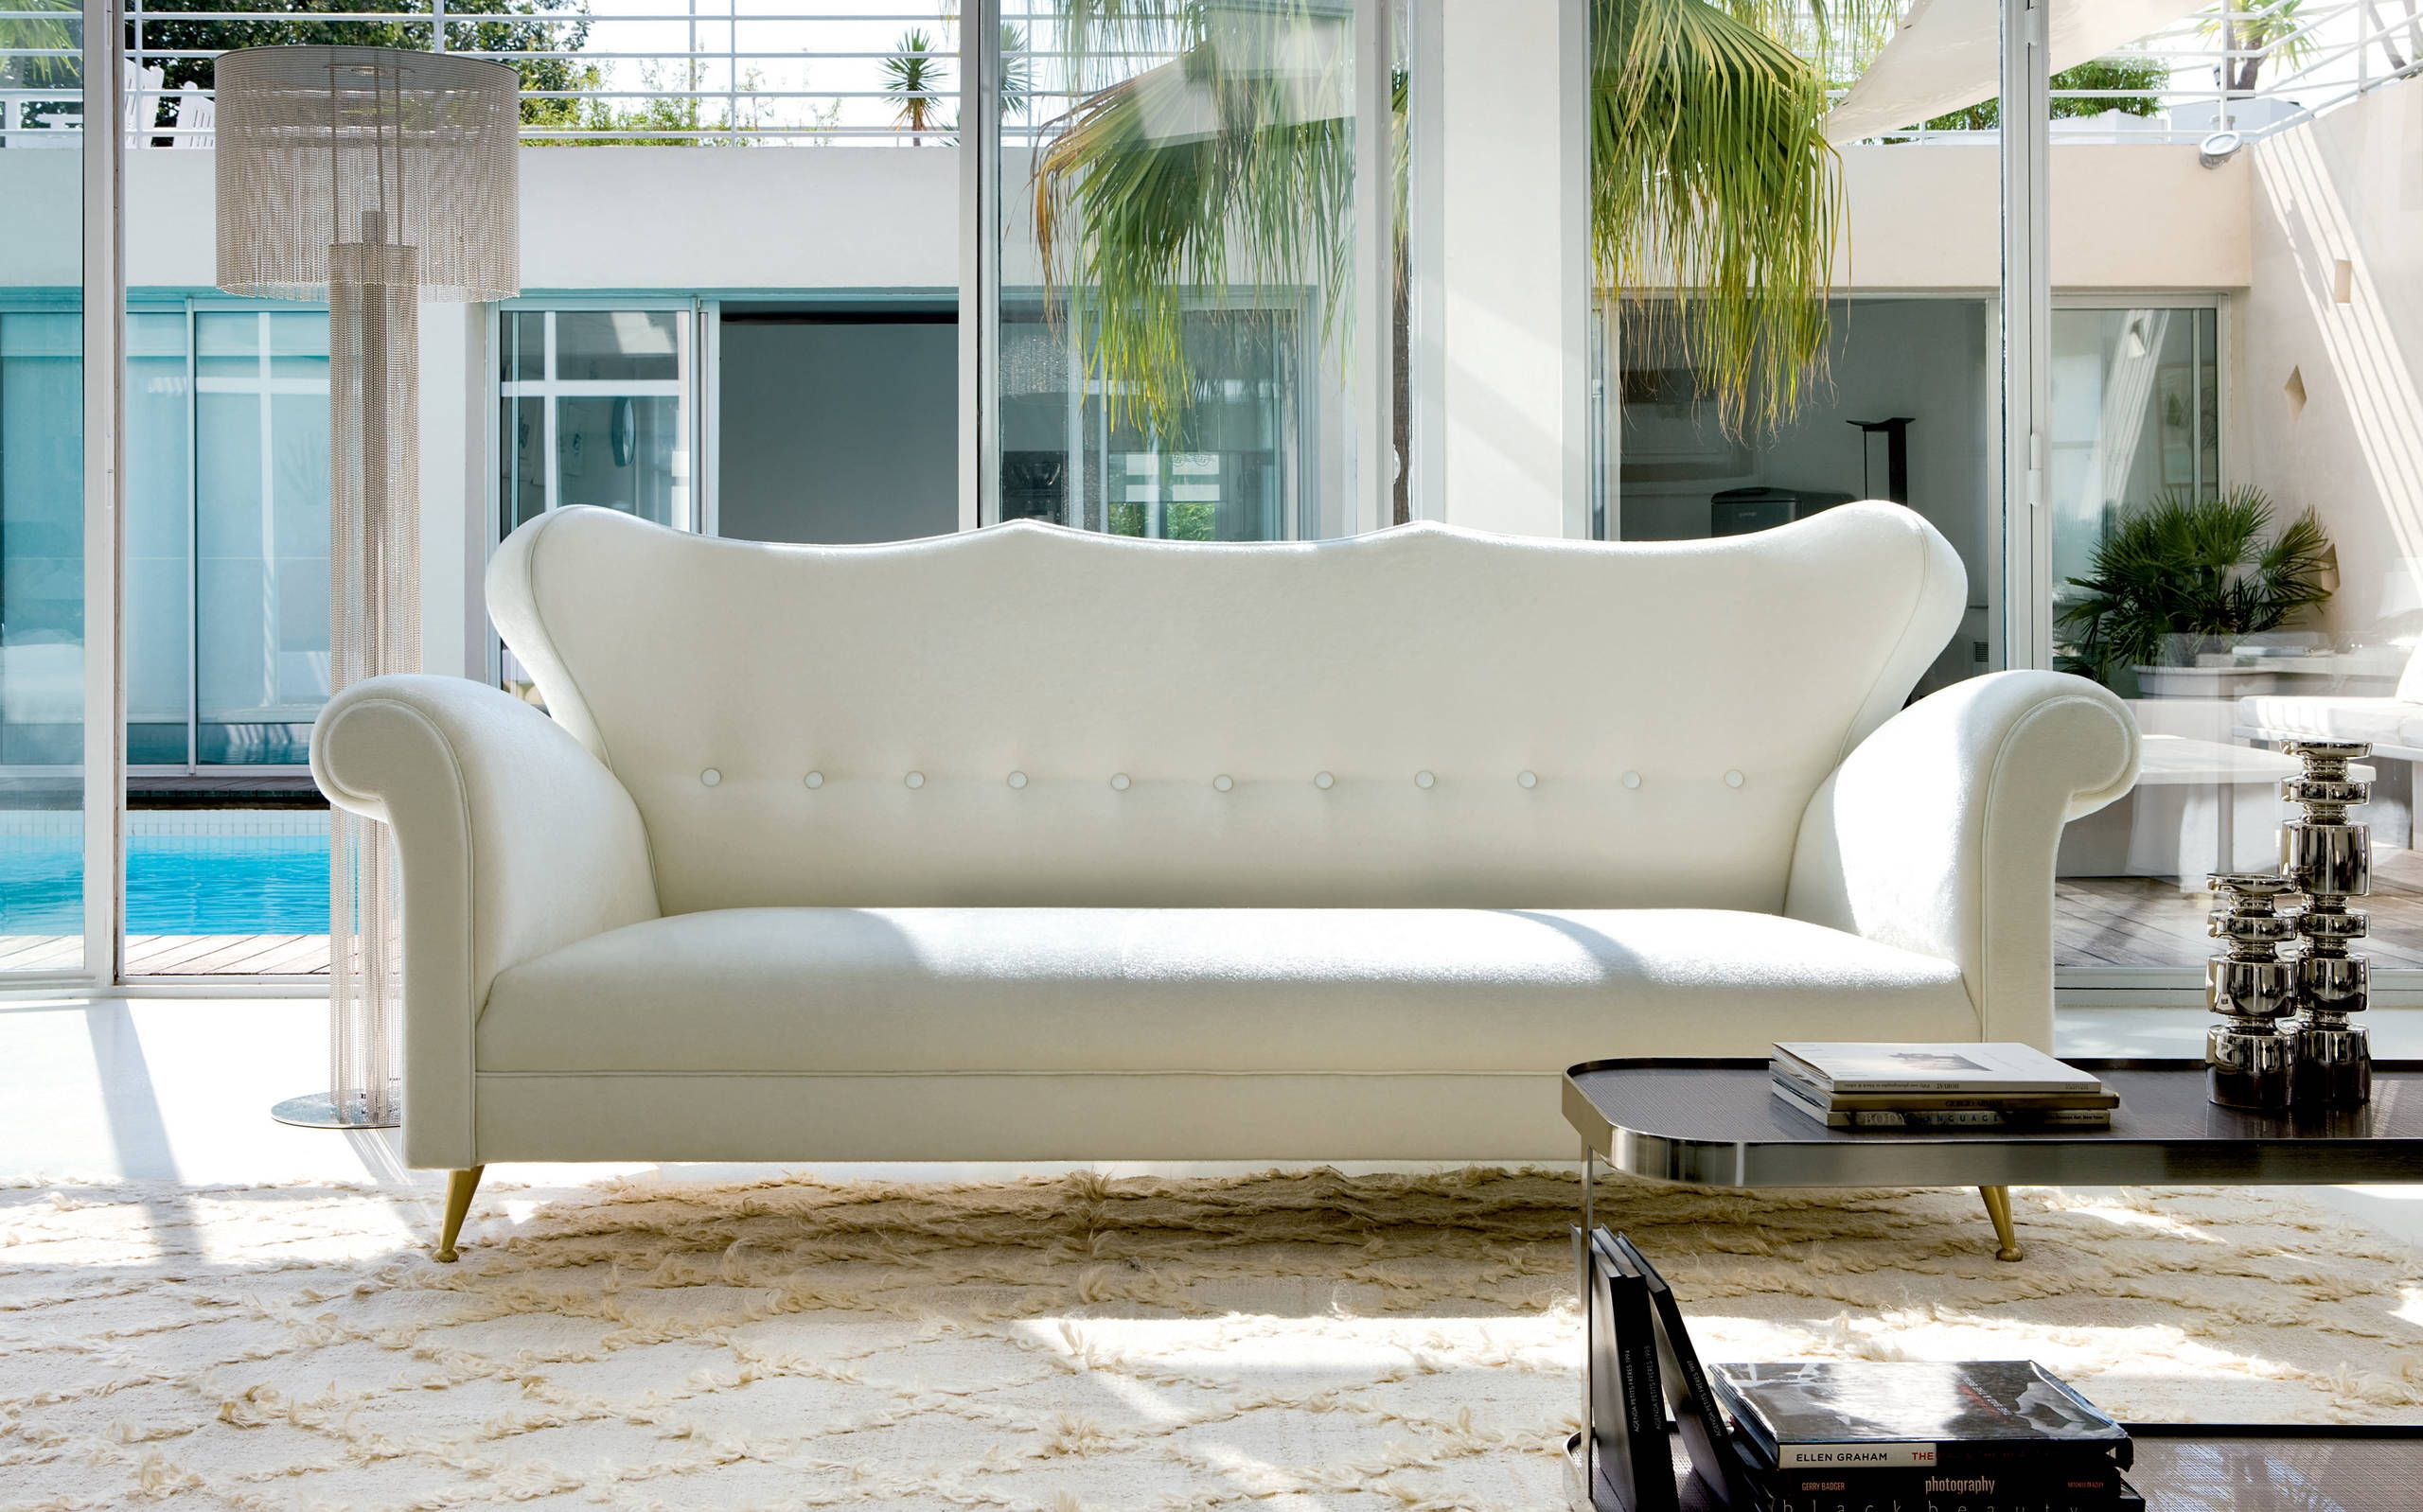 Le secret de la durabilité des meubles réside dans les tissus de haute qualité avec un bon niveau d'abrasion sur l'échelle de Martindale.  De tels meubles peuvent être placés au soleil, dans des chambres d'enfants, dans des couloirs de locaux non résidentiels, etc.